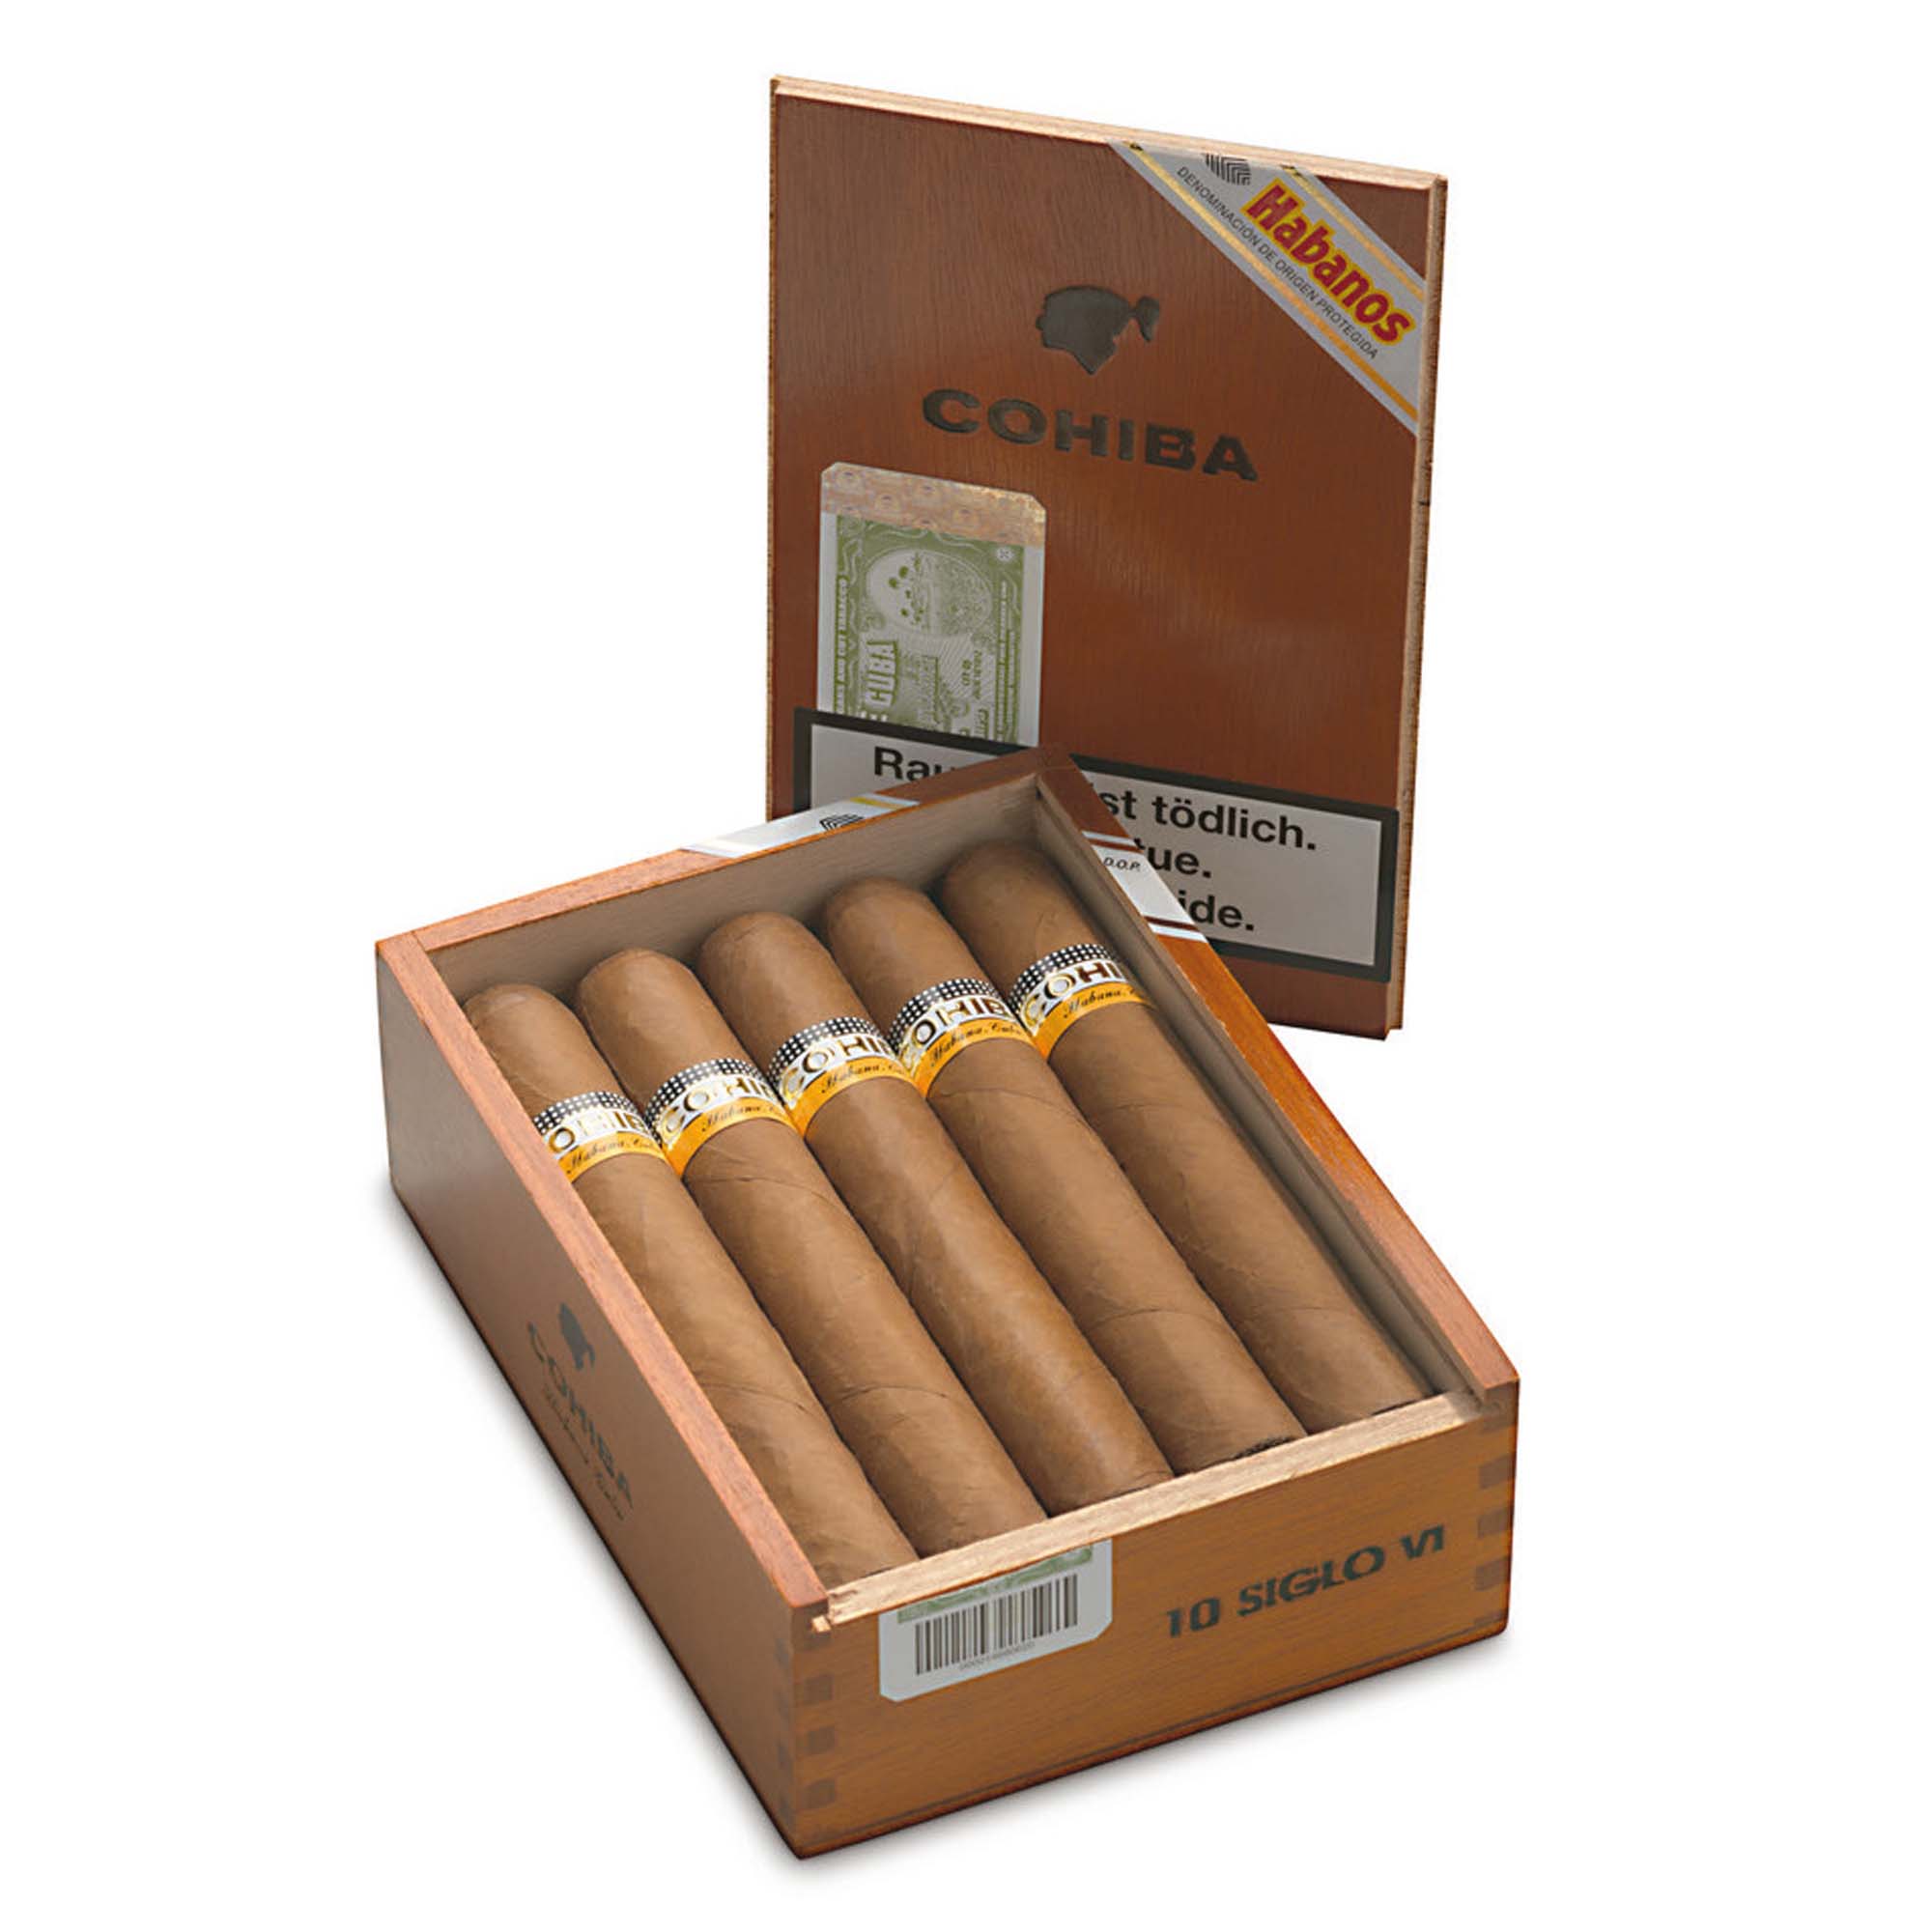 Cohiba Zigarren Linea 1492 Siglo VI in Premium Qualität